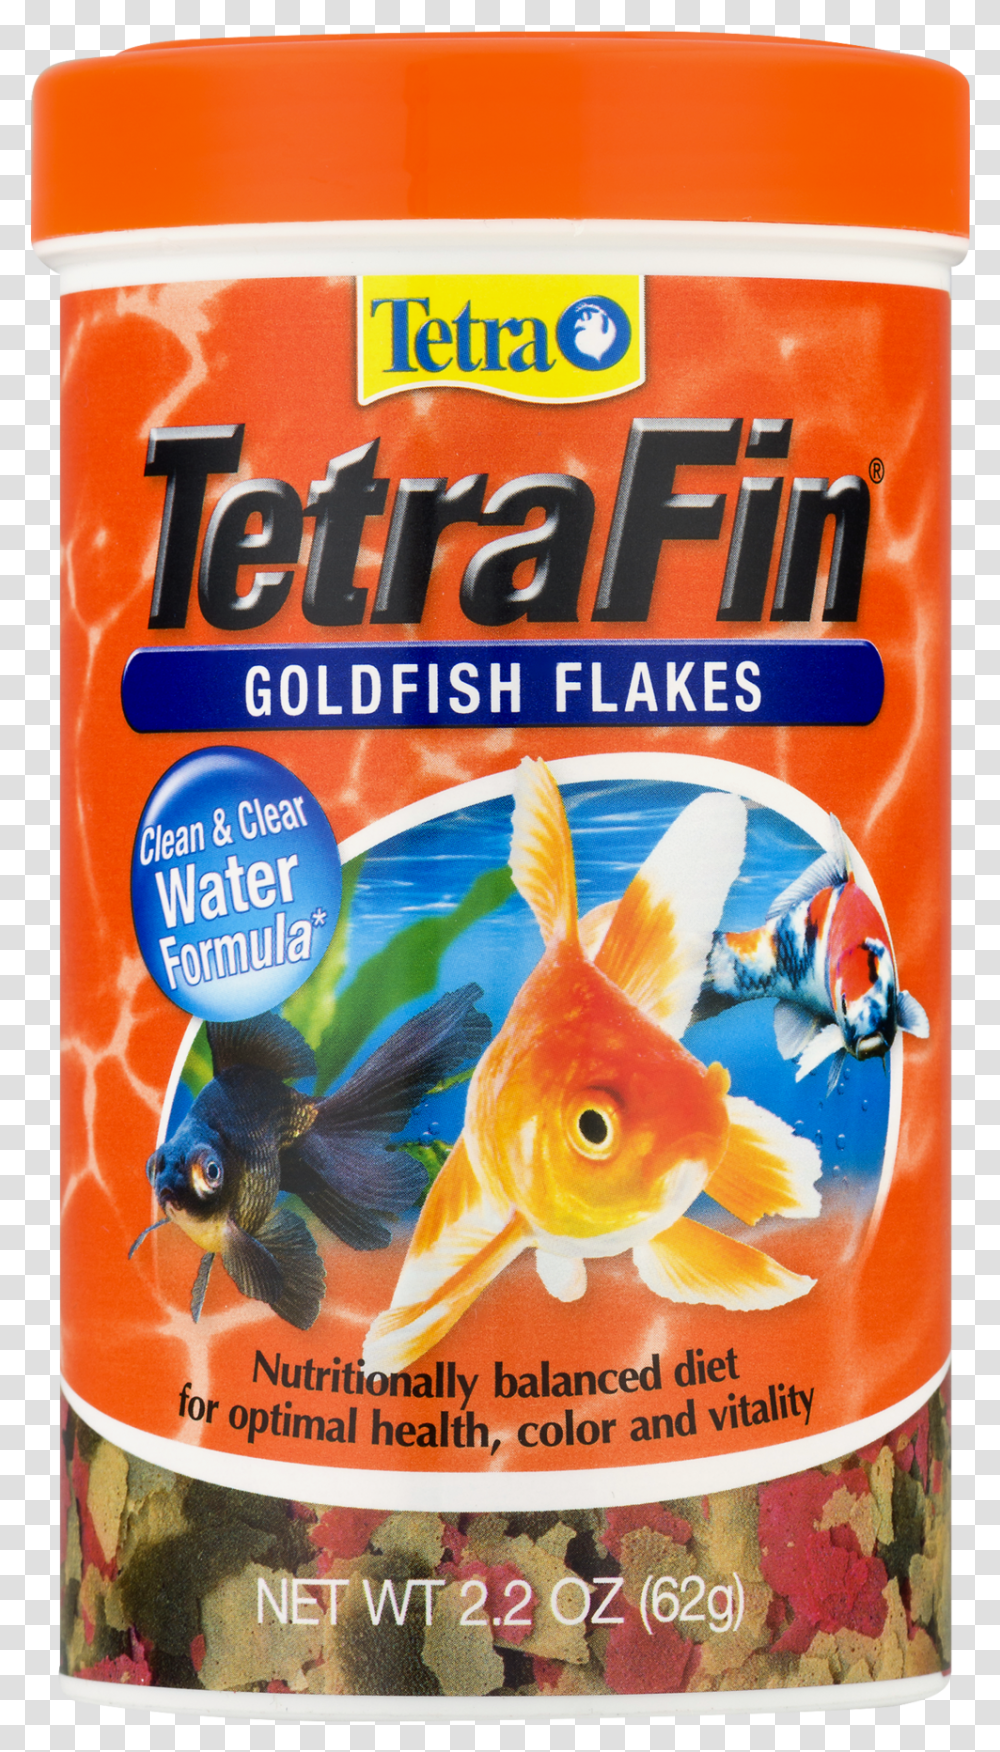 Tetra Tetrafin Goldfish Flakes, Animal, Bird Transparent Png